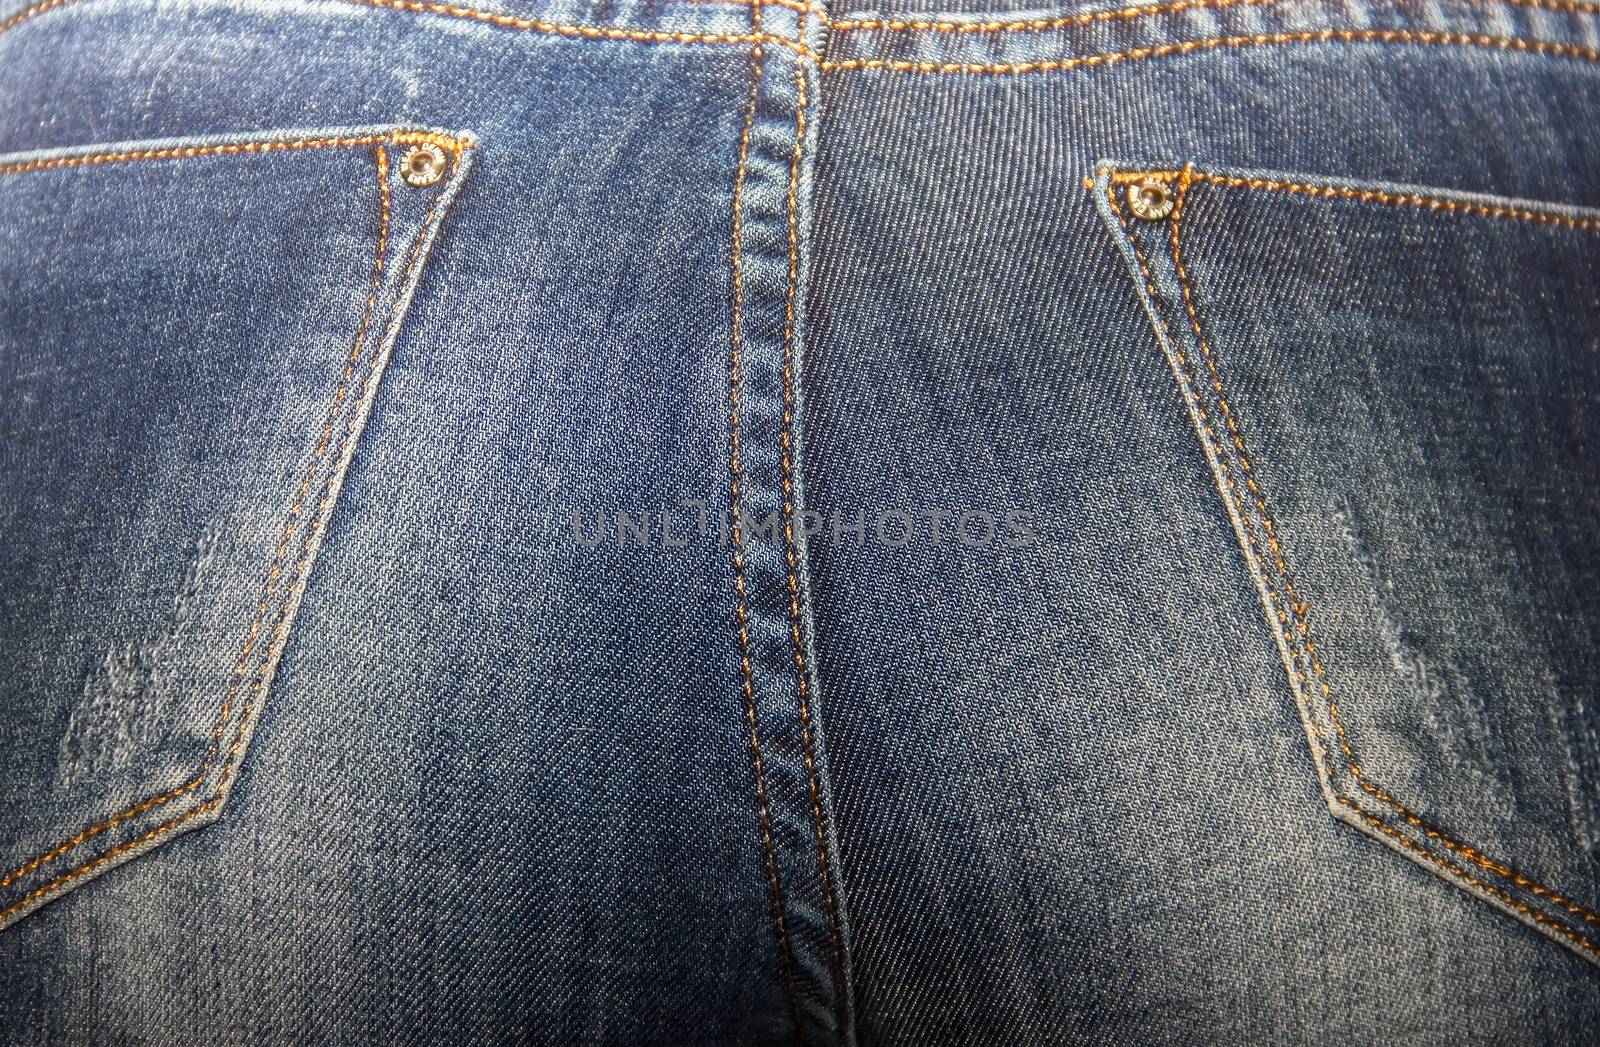 ass beautiful women in tight jeans, women's buttocks in blue jea by KoliadzynskaIryna